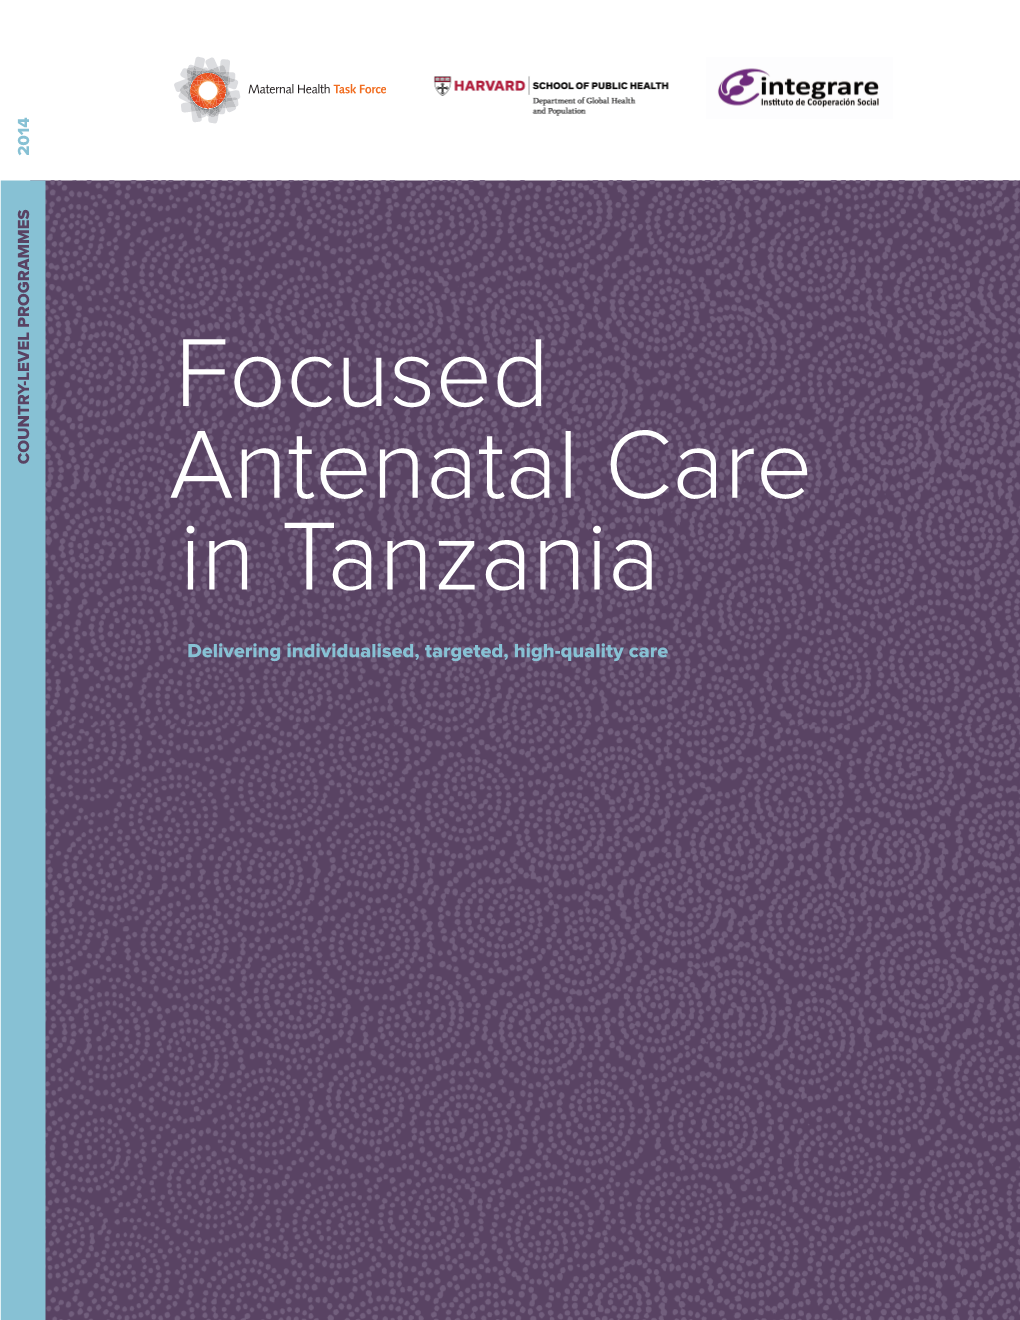 Focused Antenatal Care in Tanzania